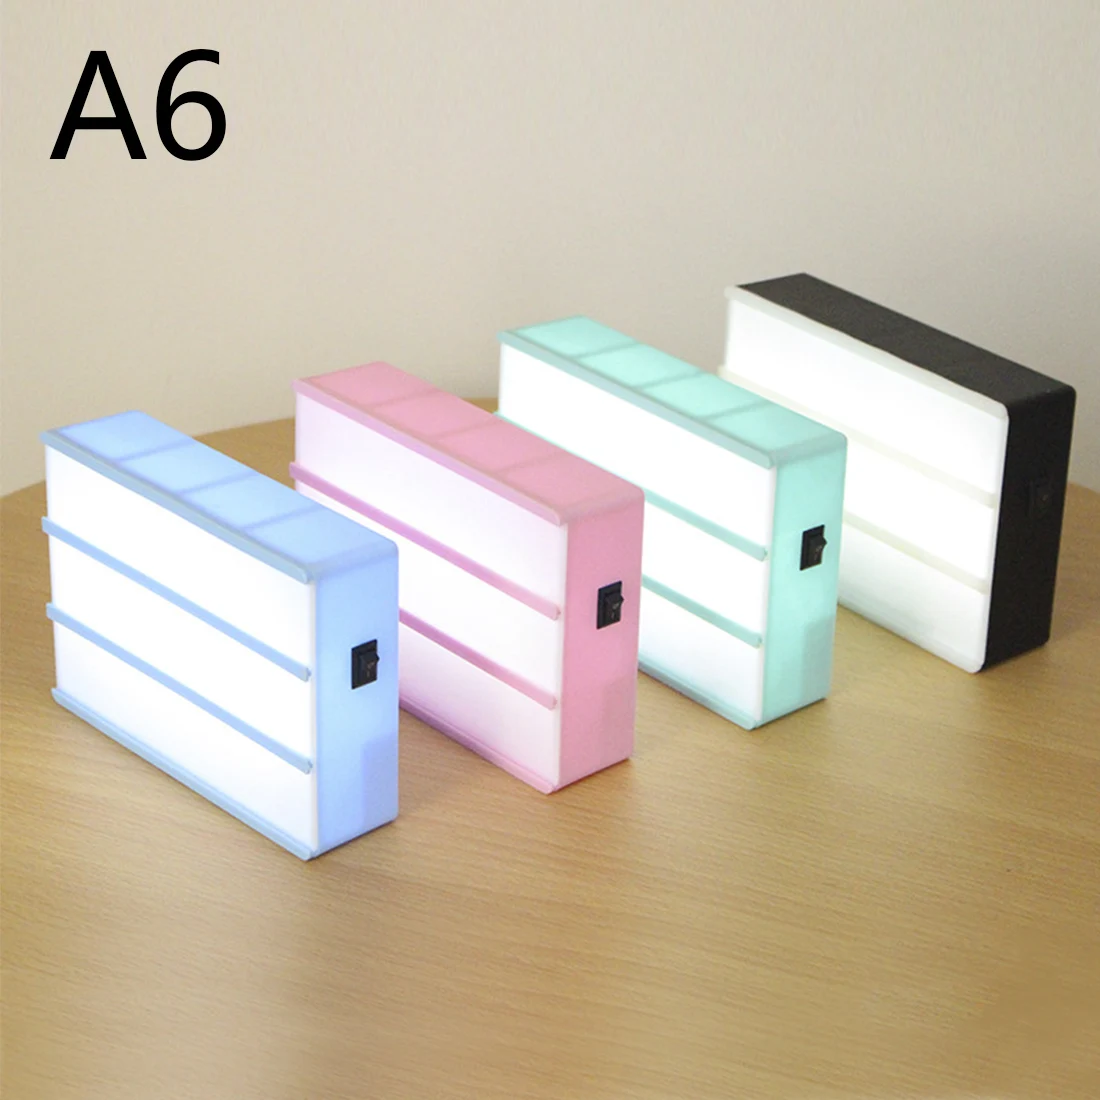 A4, A6, размер, светодиодный, комбинированный, Ночной светильник, коробка, лампа AA, батарея, сделай сам, буквы, символ, украшение для открыток, лампа, доска для сообщений, светильник, коробка